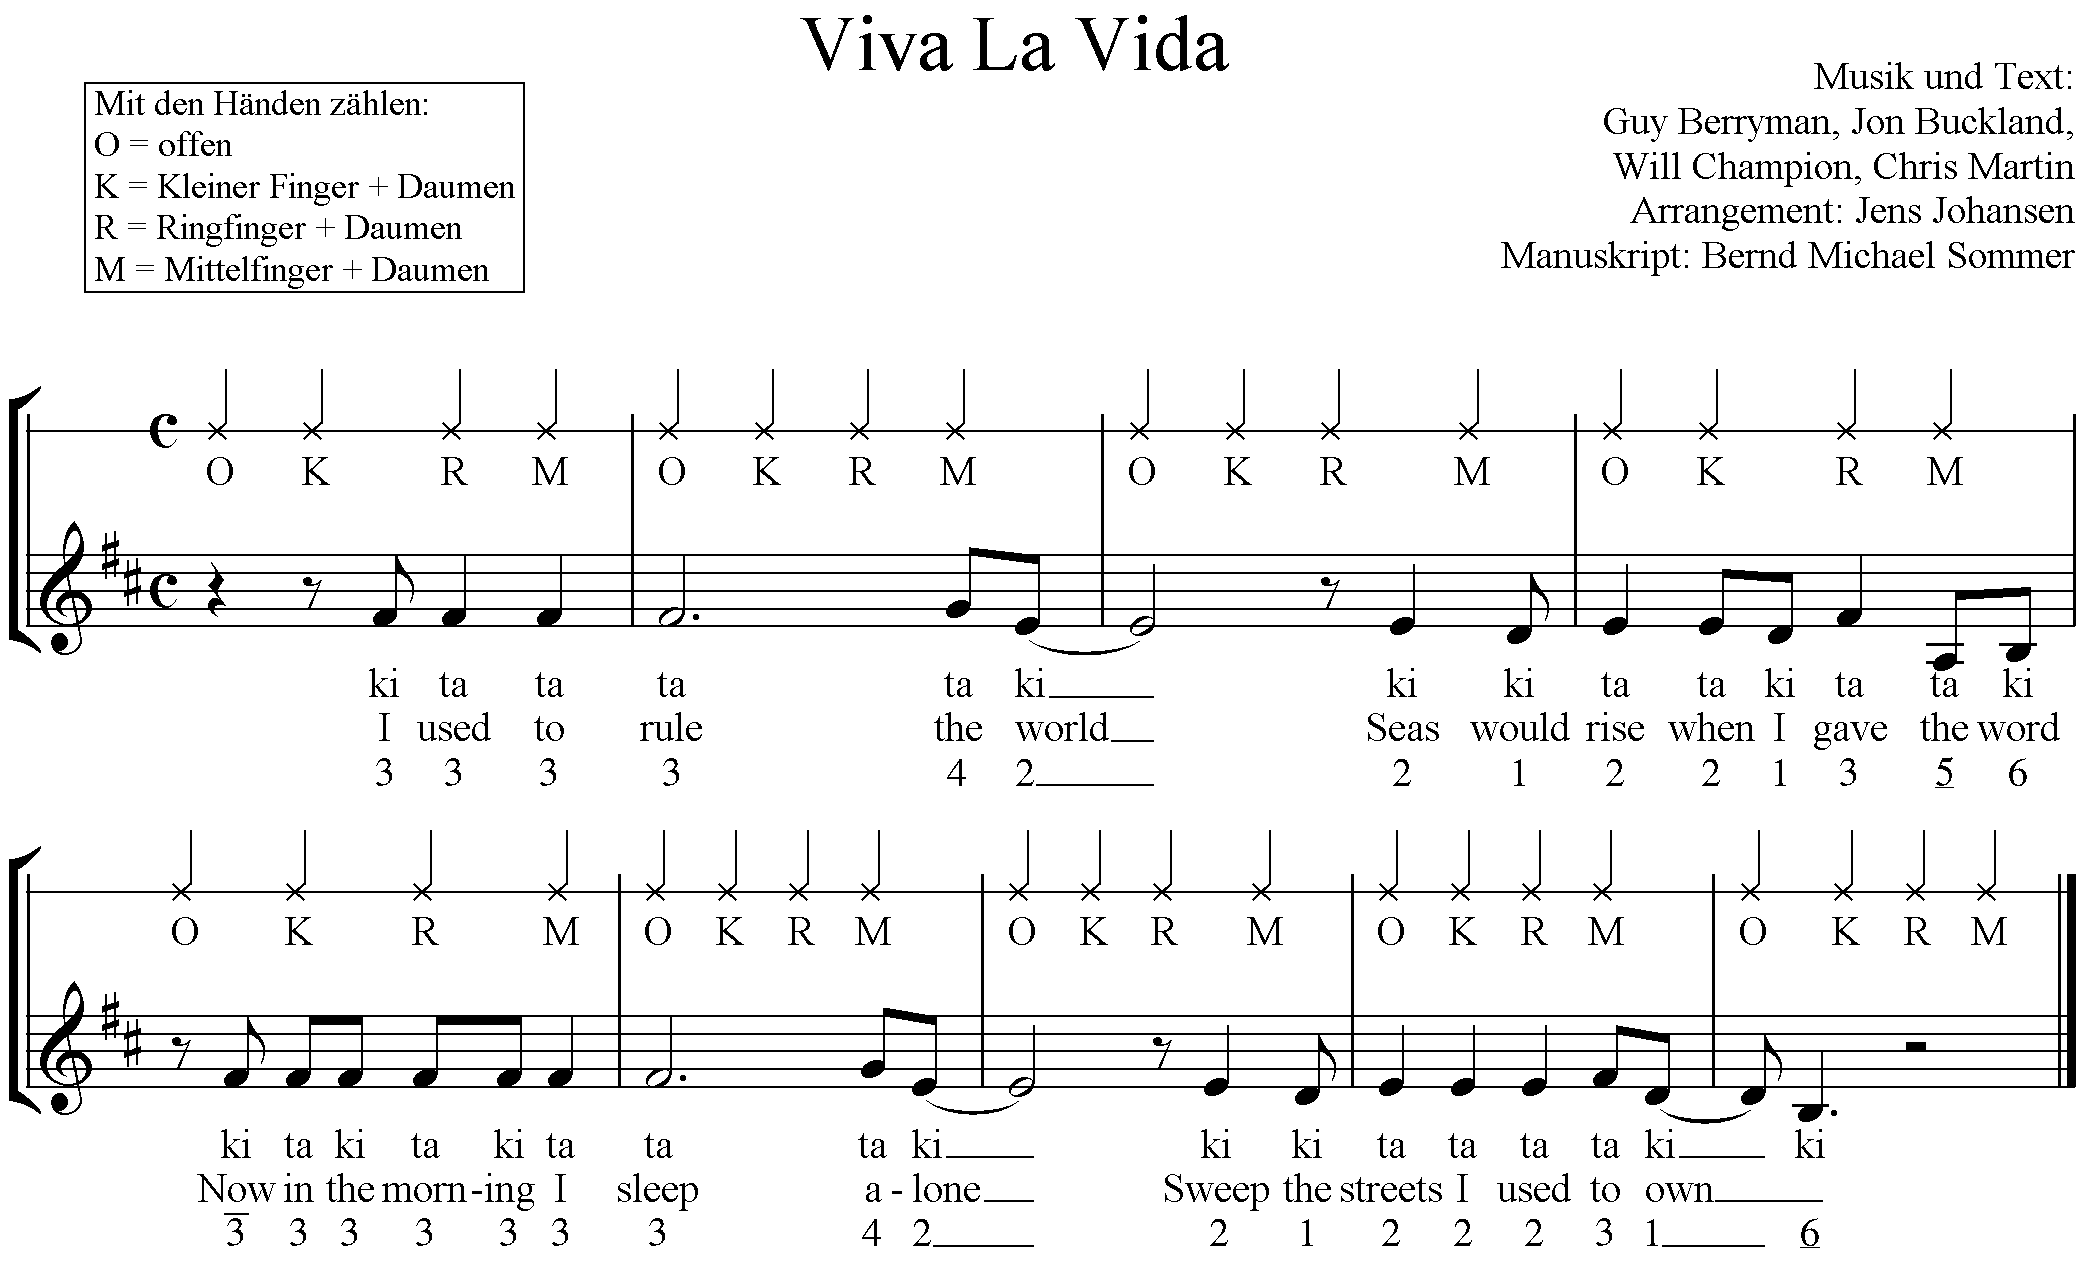 Viva La Vida - Takt 1 bis 9 - Üben mit Rhythmussilben, und Intervallen